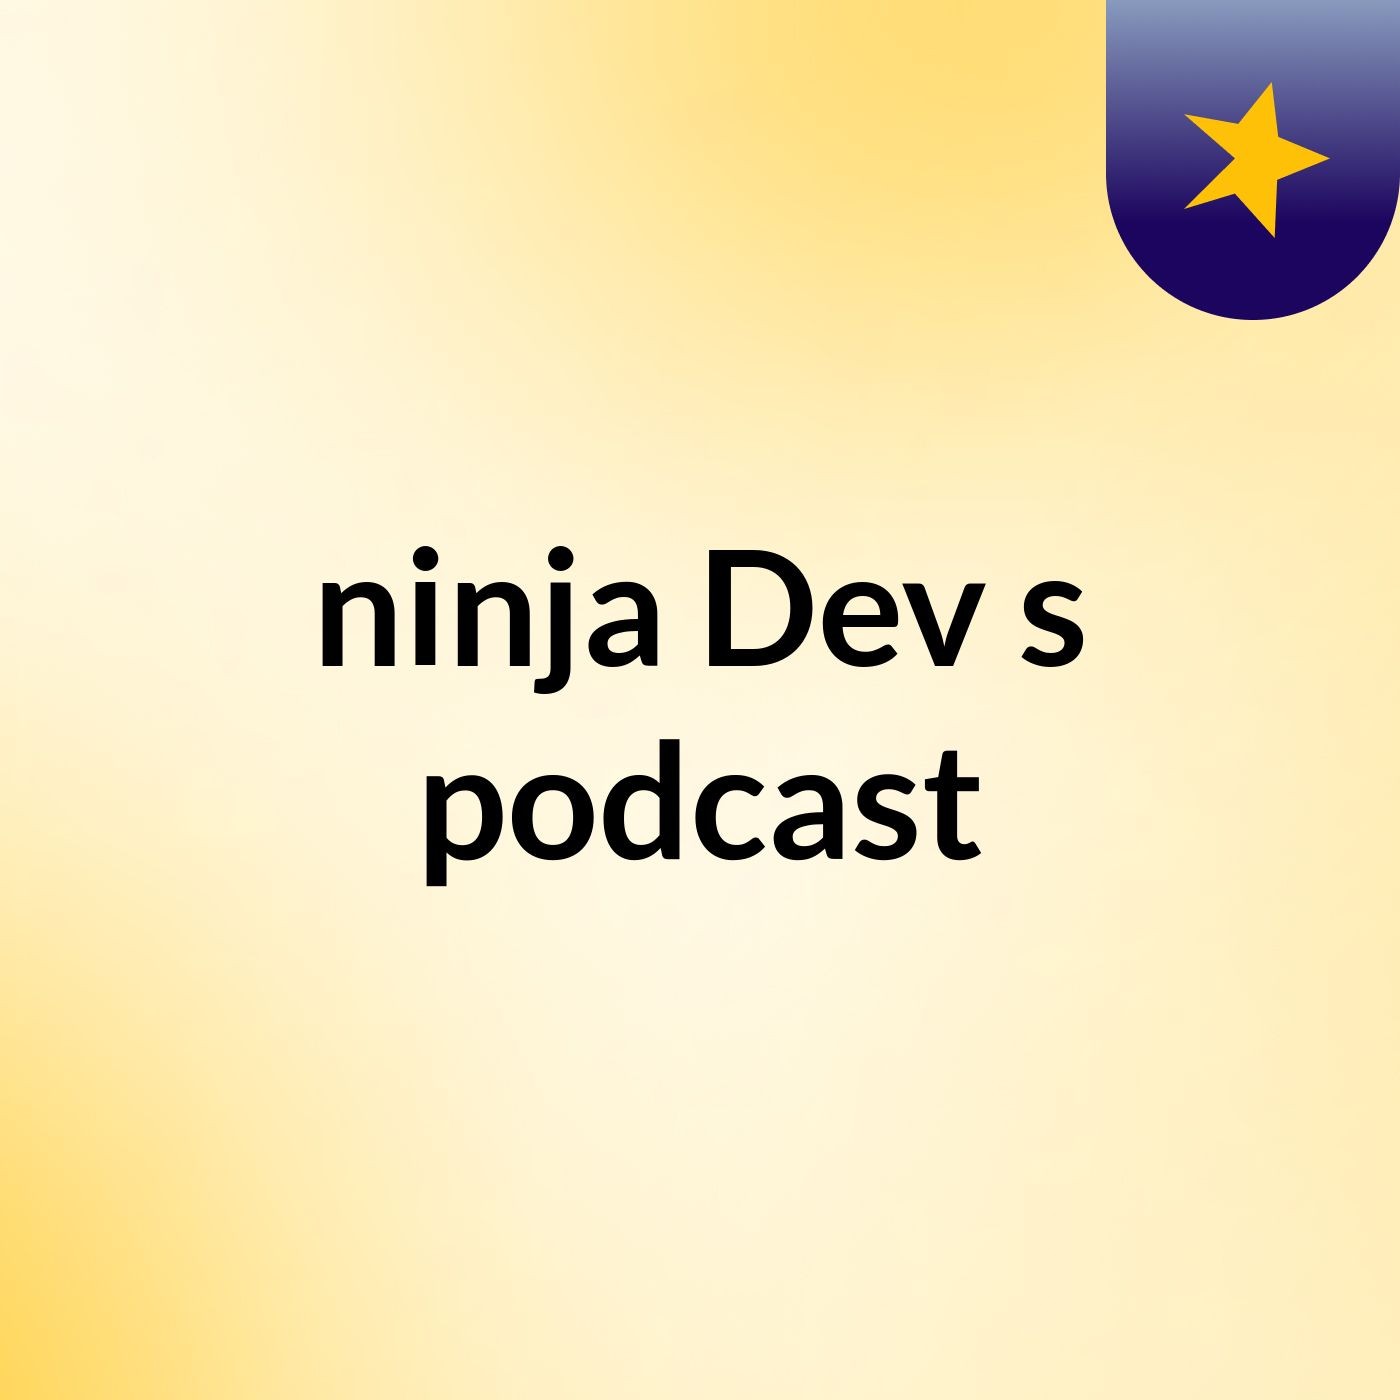 Episode 8 - ninja Dev's podcast